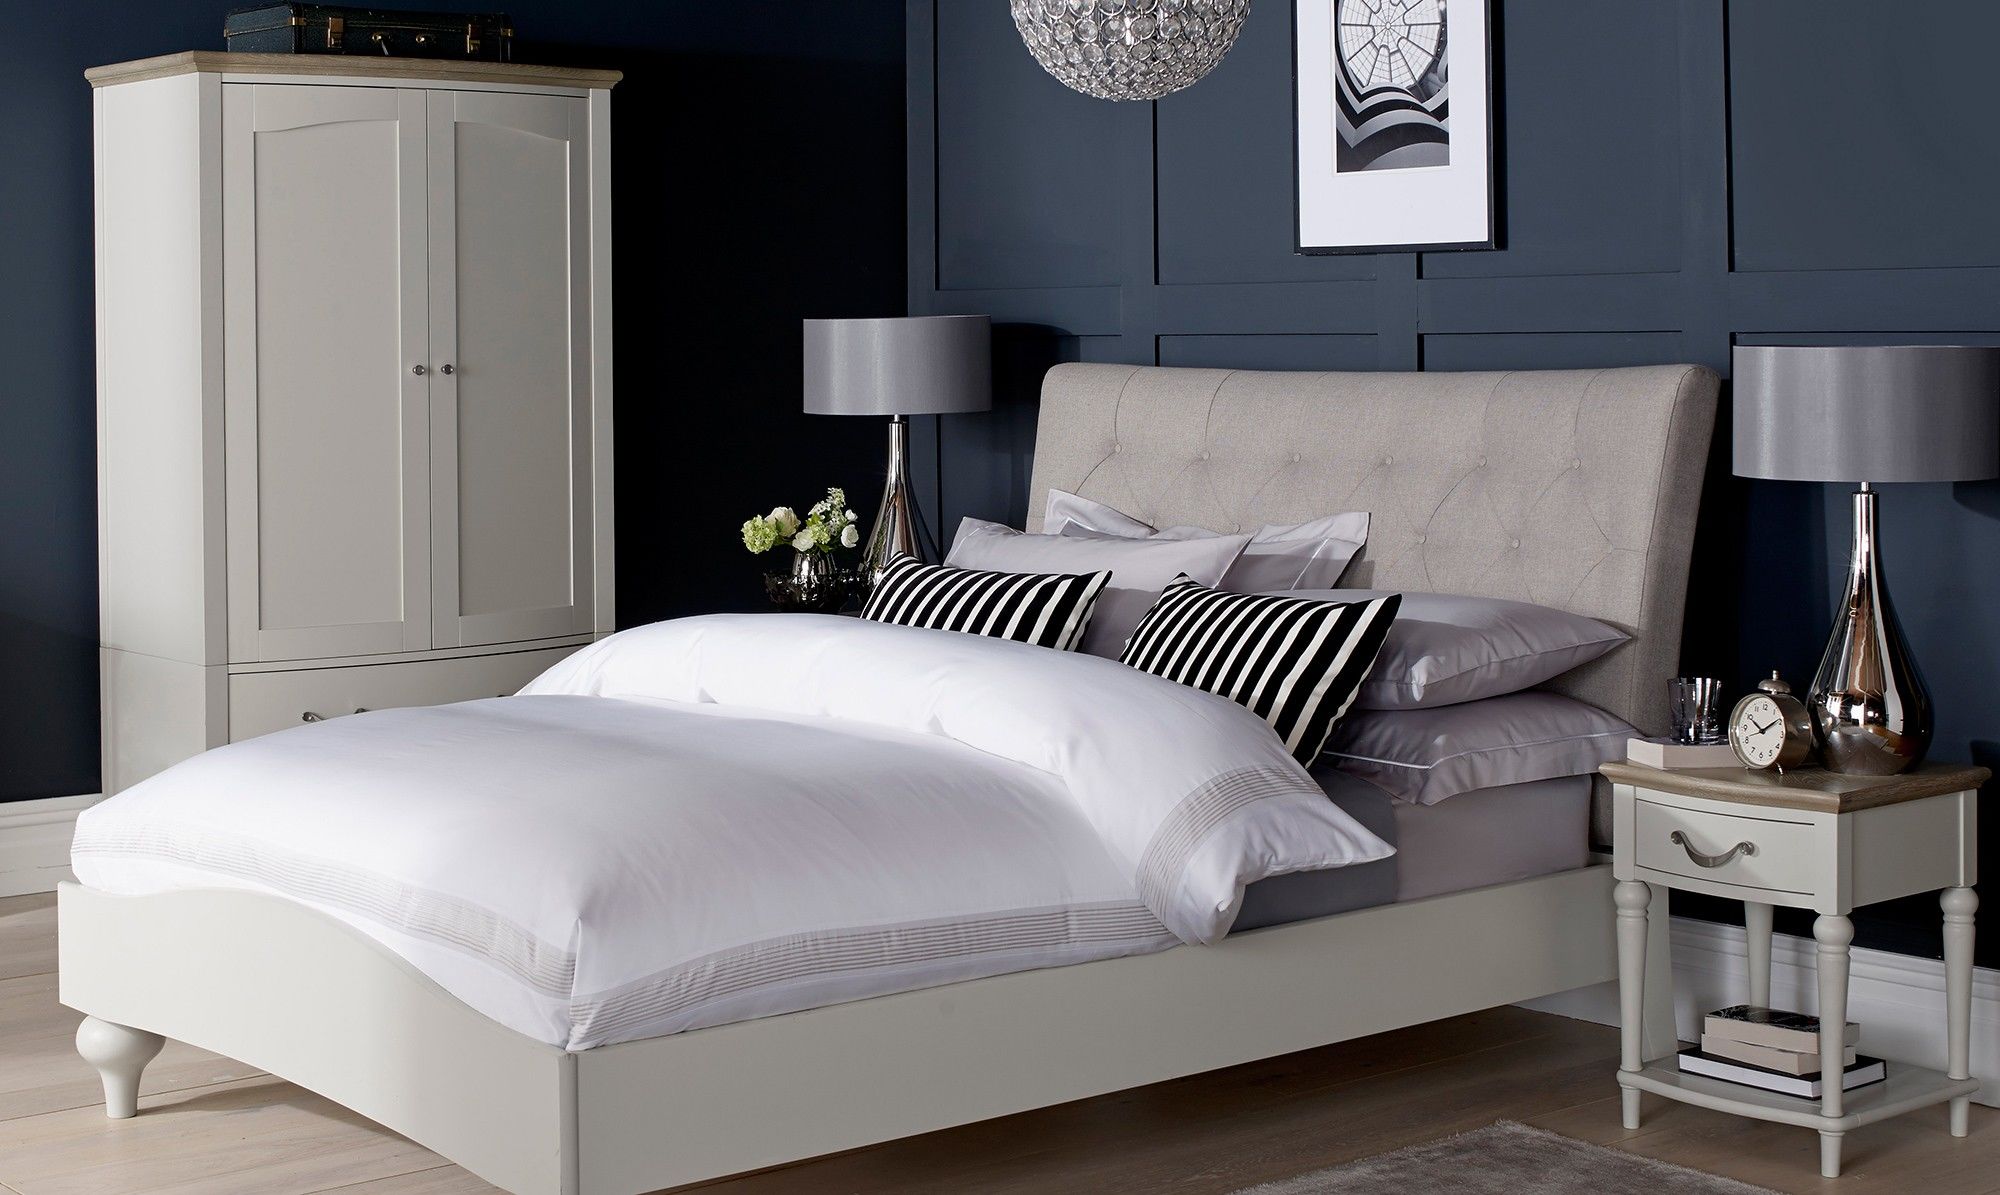 Mẫu 2 tủ đầu giường cổ điển bằng gỗ bố trí đối xứng cho phòng ngủ đẹp xinh